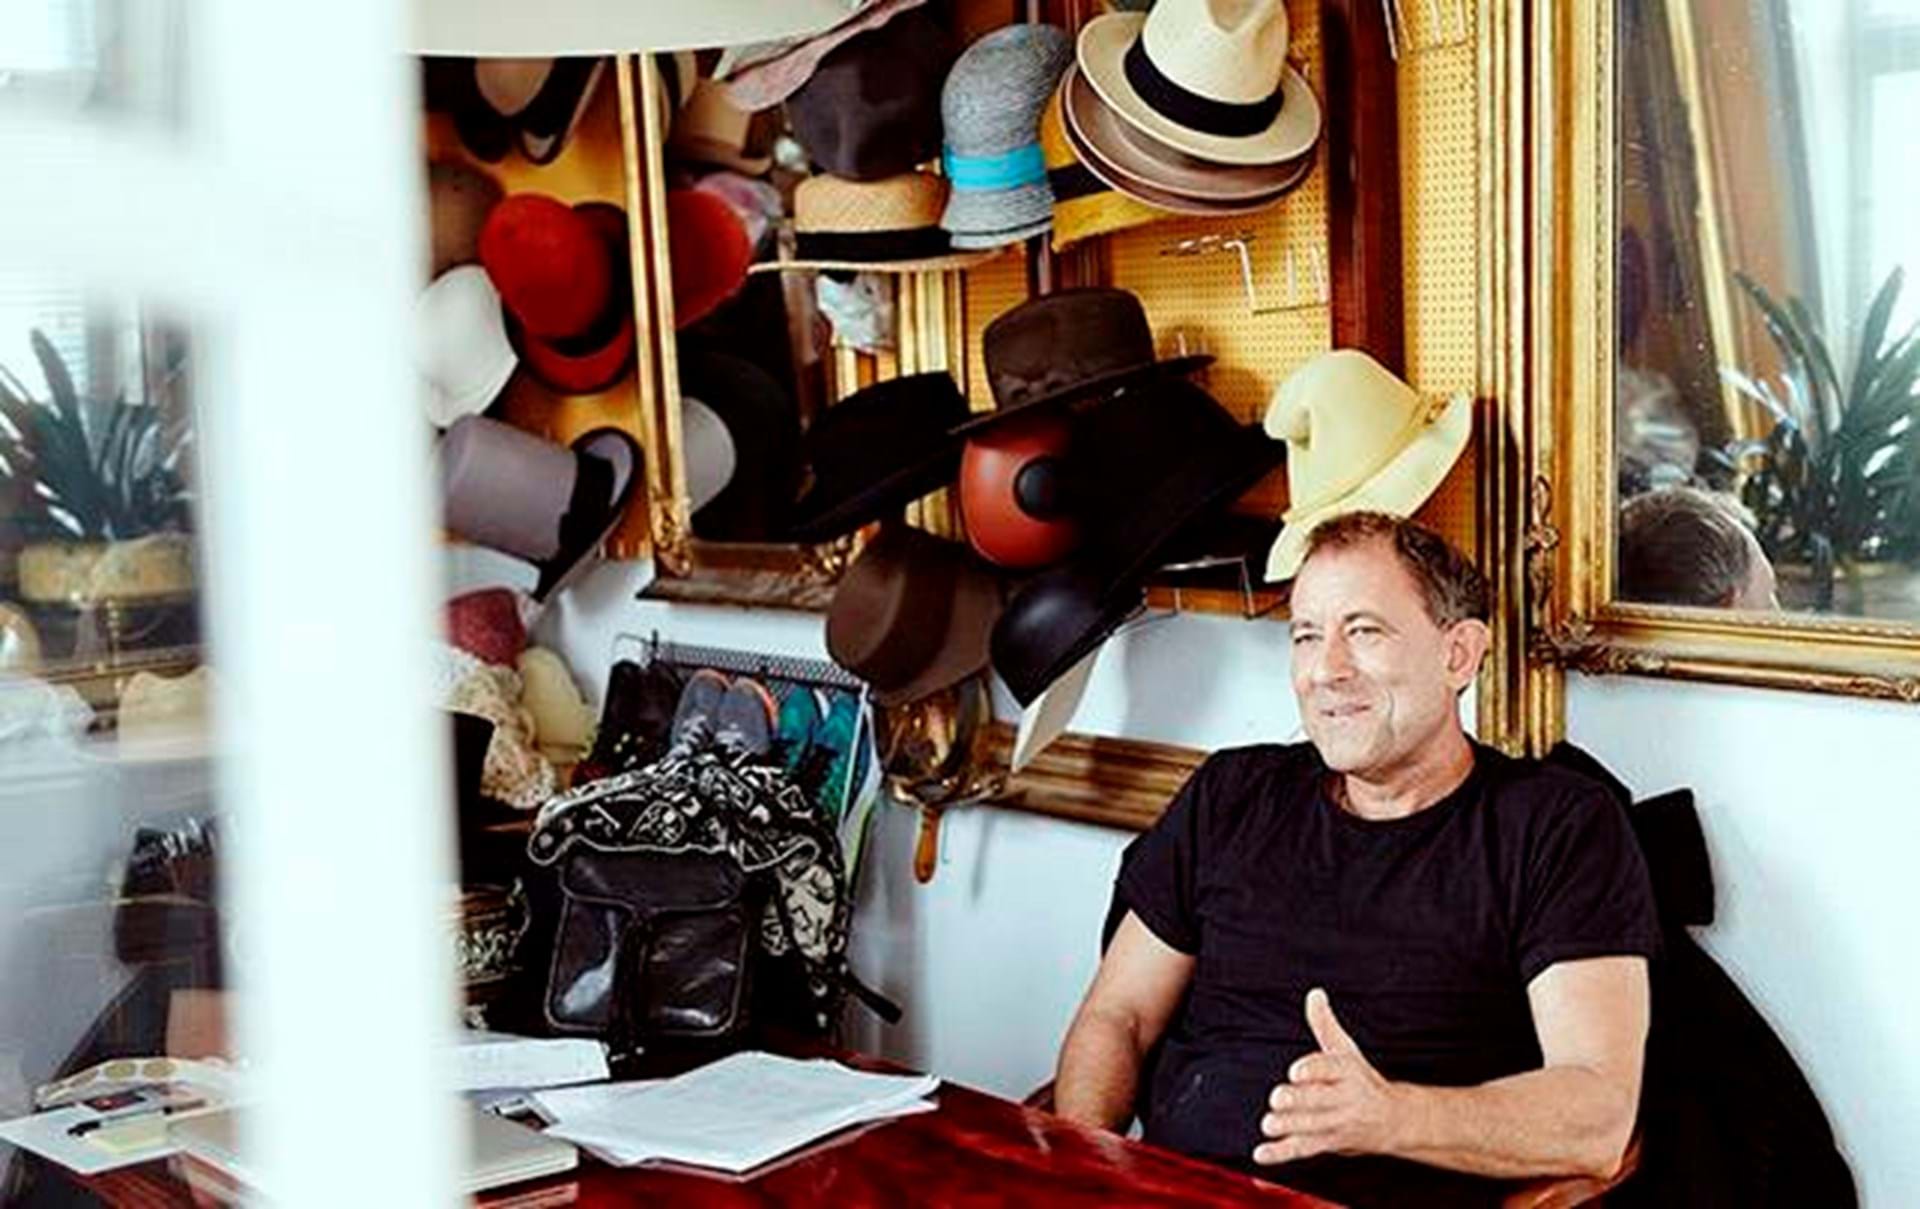 Han sælger til til førende danske designere – og til alverdens jonglører. Han er Danmarks eneste tilbageværende hattemager, og han har overlevet ved at sno sig. - Euroman